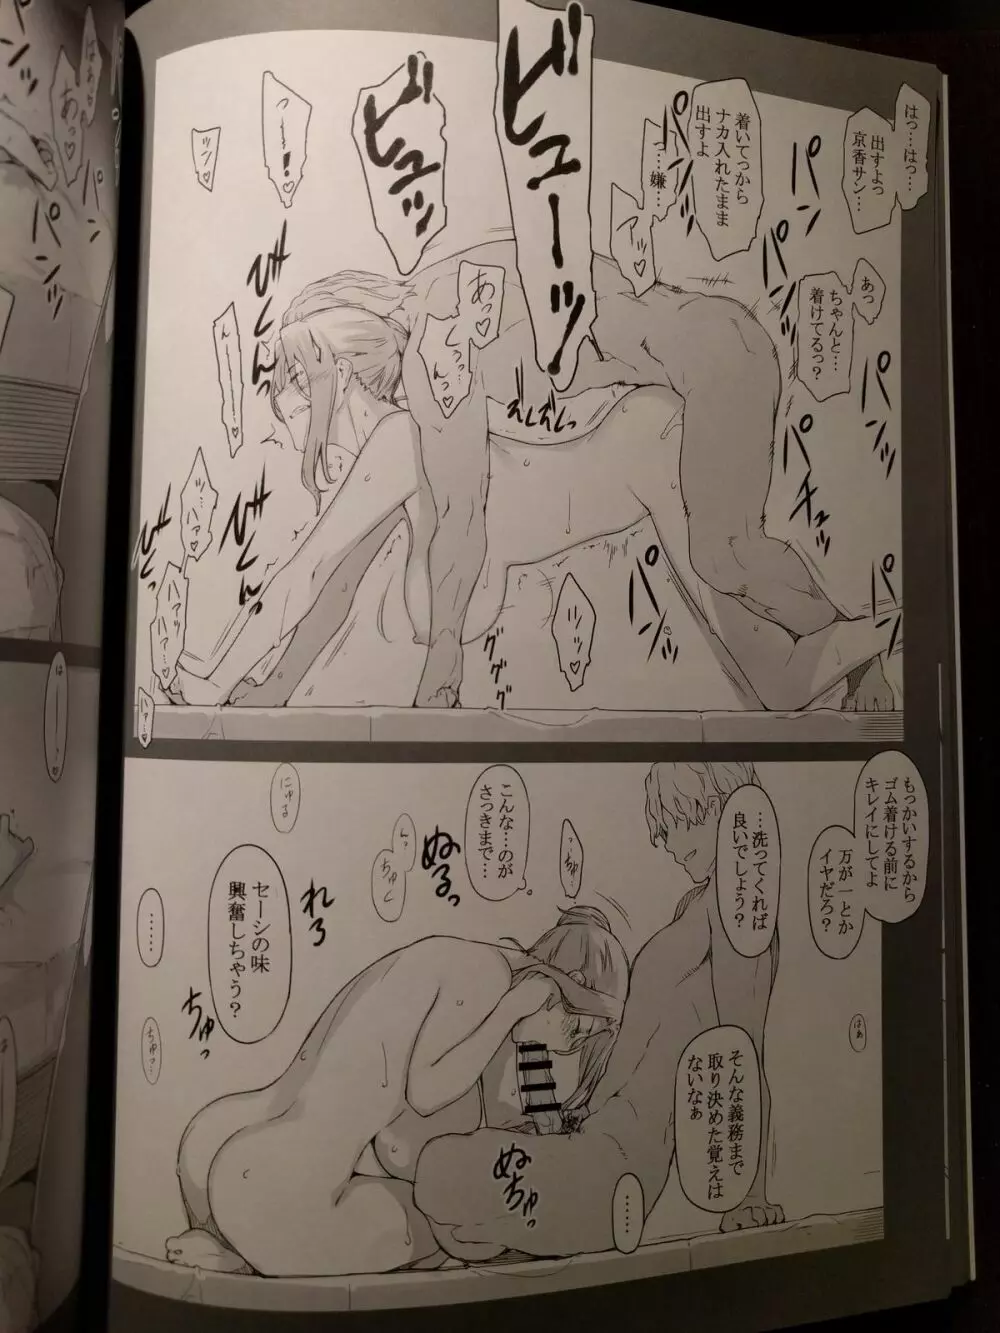 橘さん家ノ男性事情 小説版挿絵+オマケの本 page 27 onward 6ページ